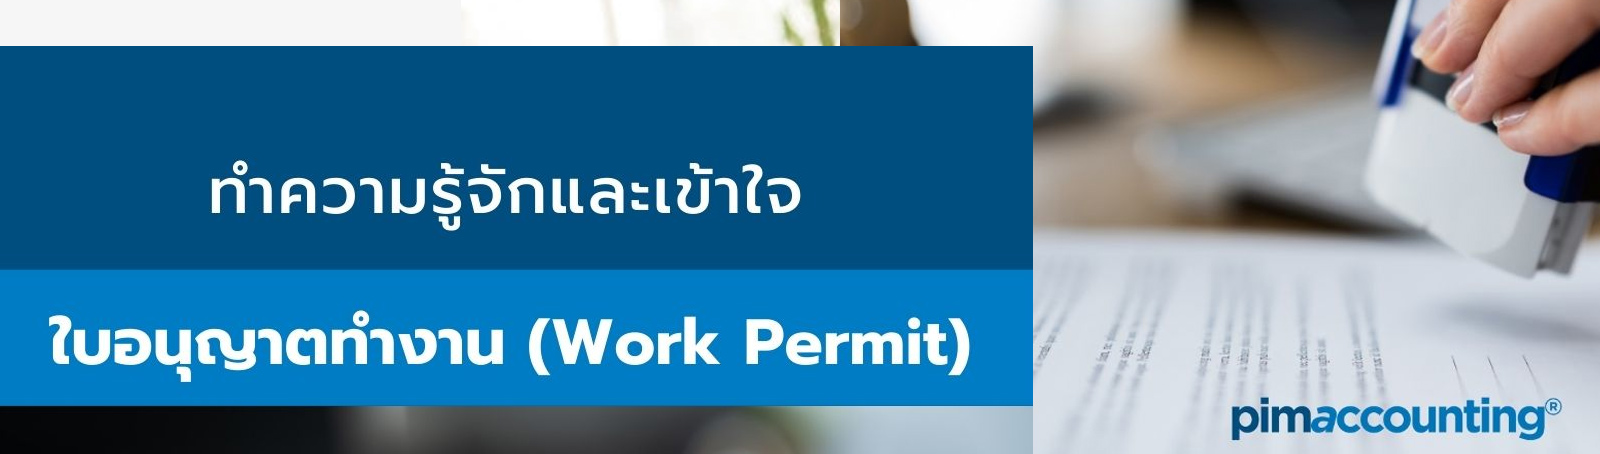 ทำความรู้จักและเข้าใจใบอนุญาตทำงาน (Work Permit)